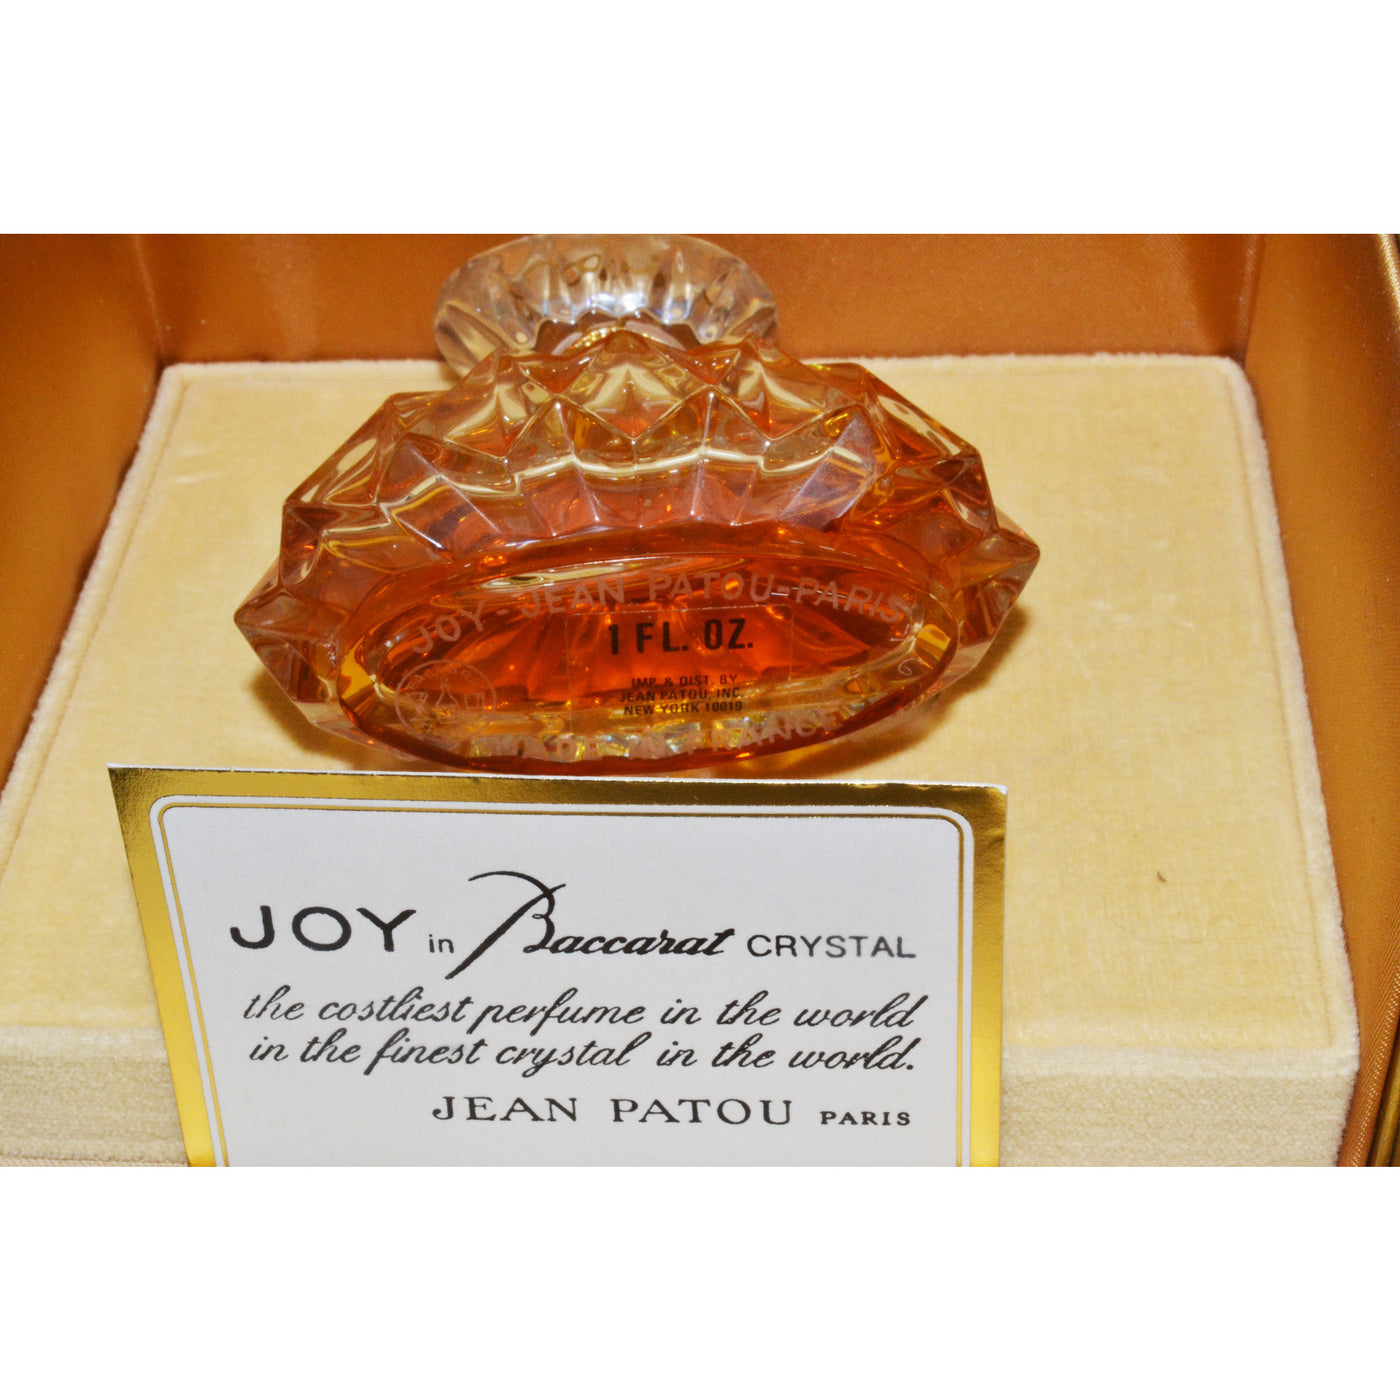 Vintage Joy Parfum Baccarat Edition By Jean Patou 